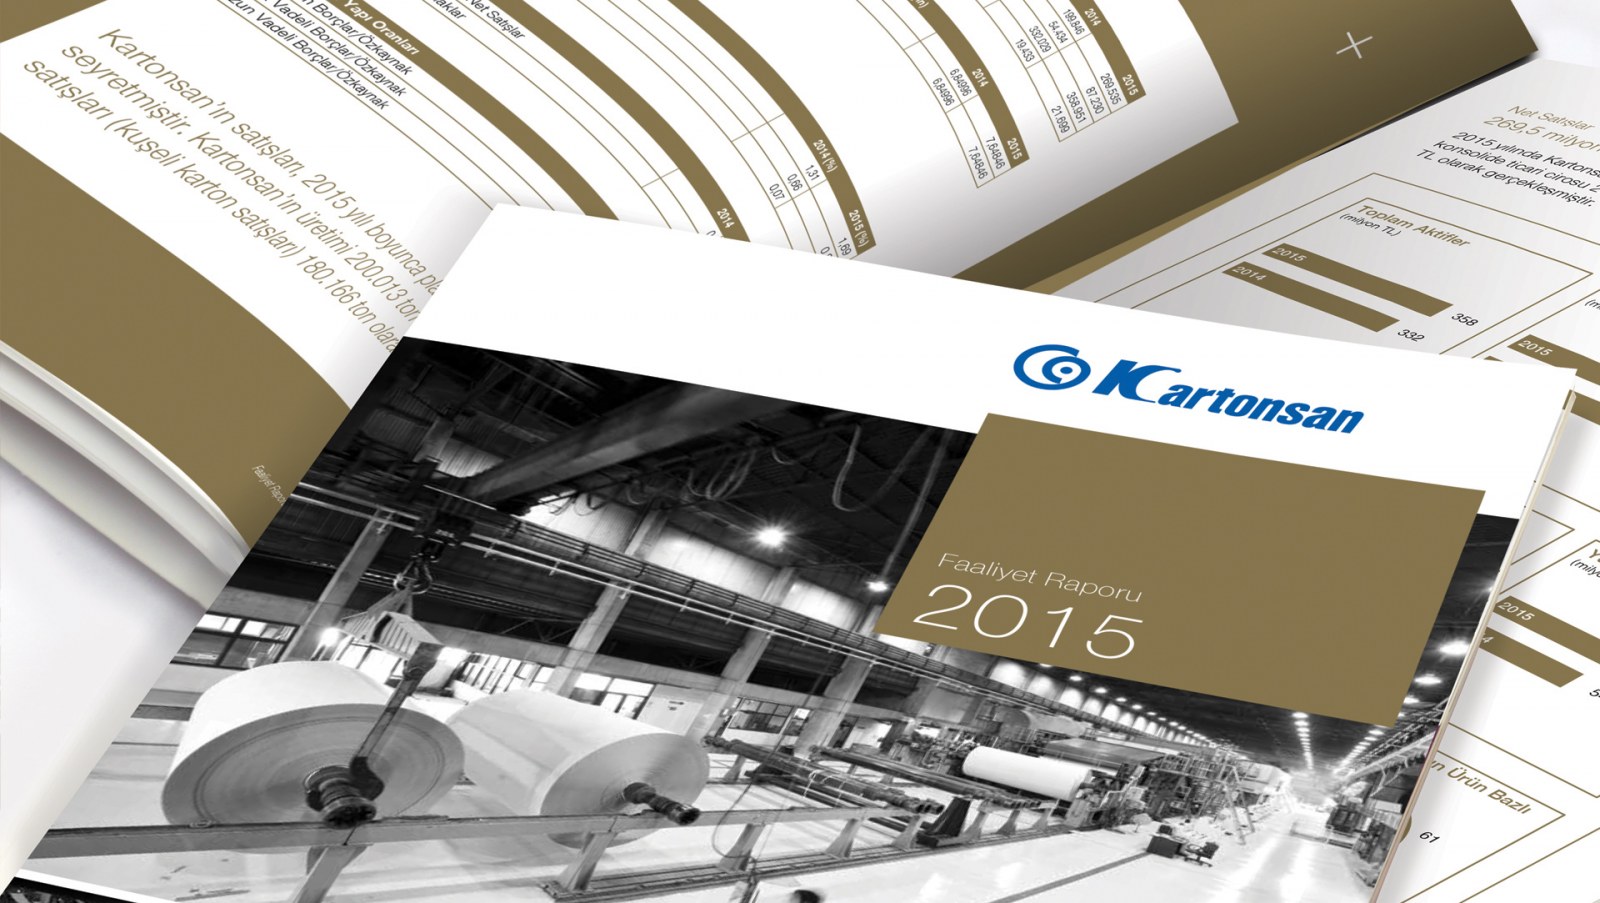 KARTONSAN / 2015 Faaliyet Raporu / 2015 Annual Report